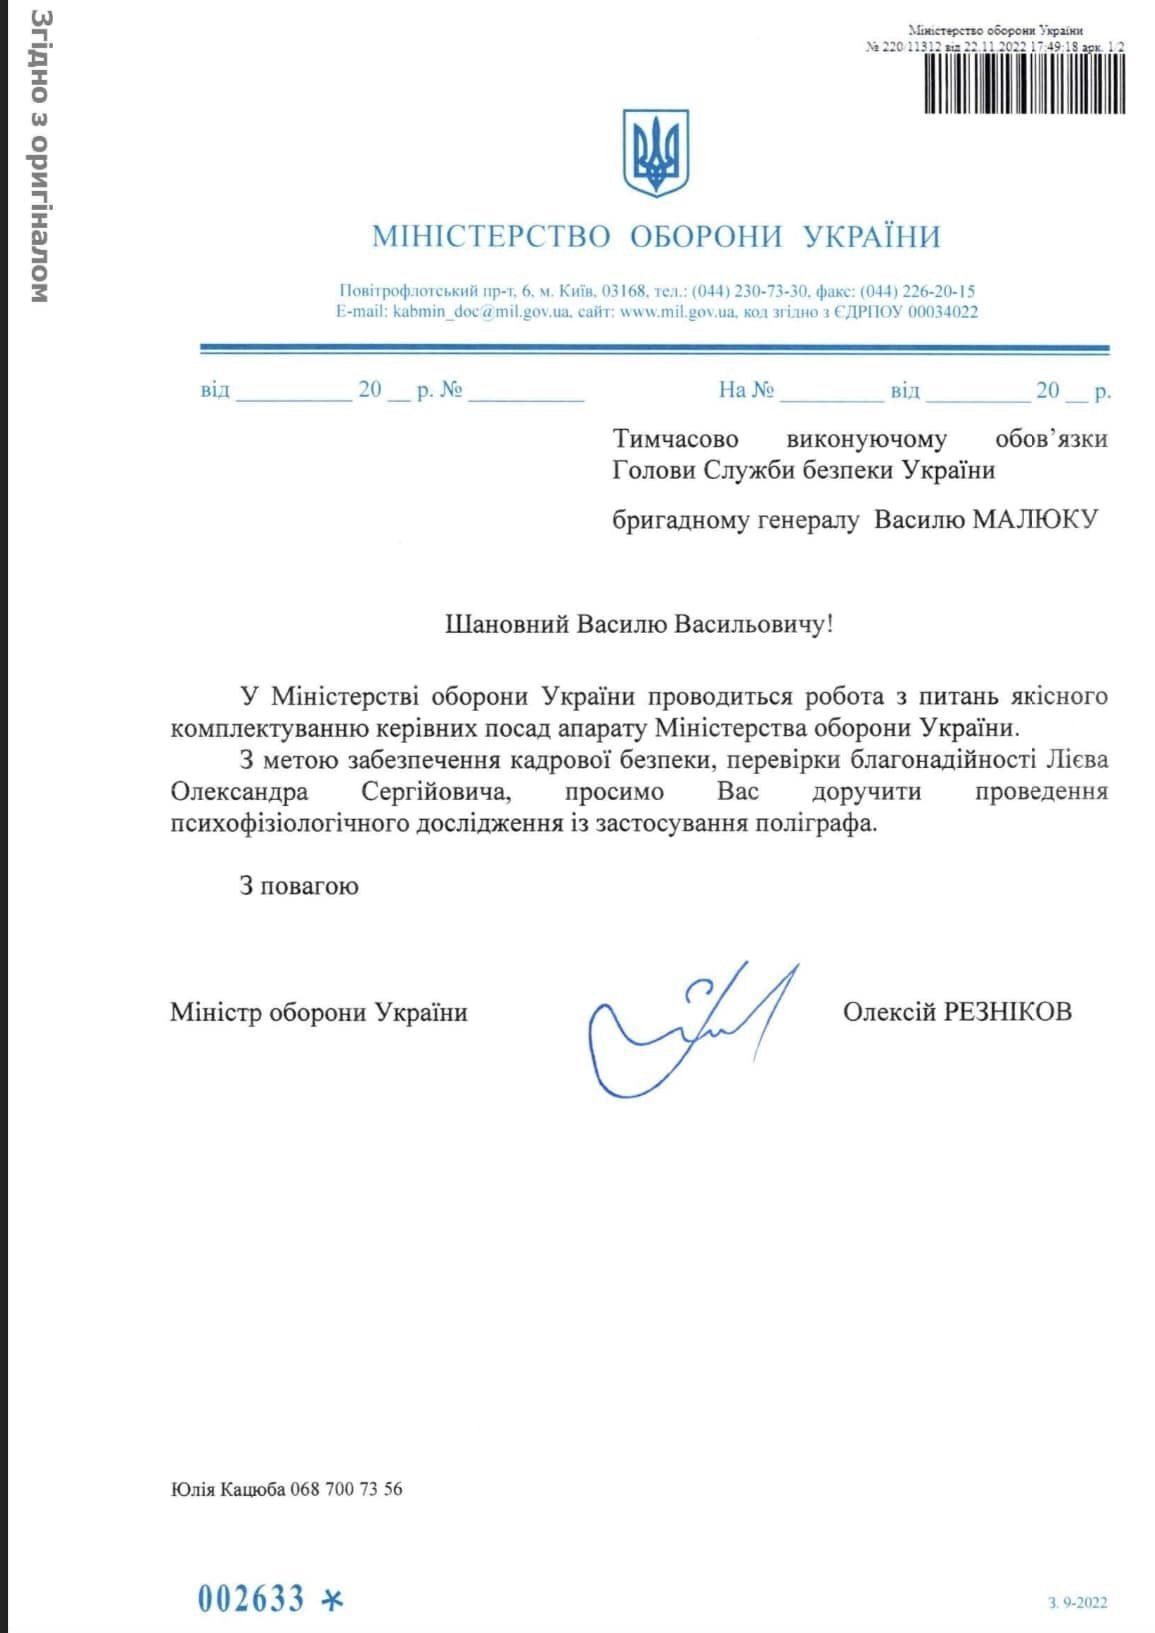 Попытка дискредитировать министра обороны: Лиев, которого обвинили в ''поддержке оккупации Крыма'', рассказал о причинах вброса в СМИ